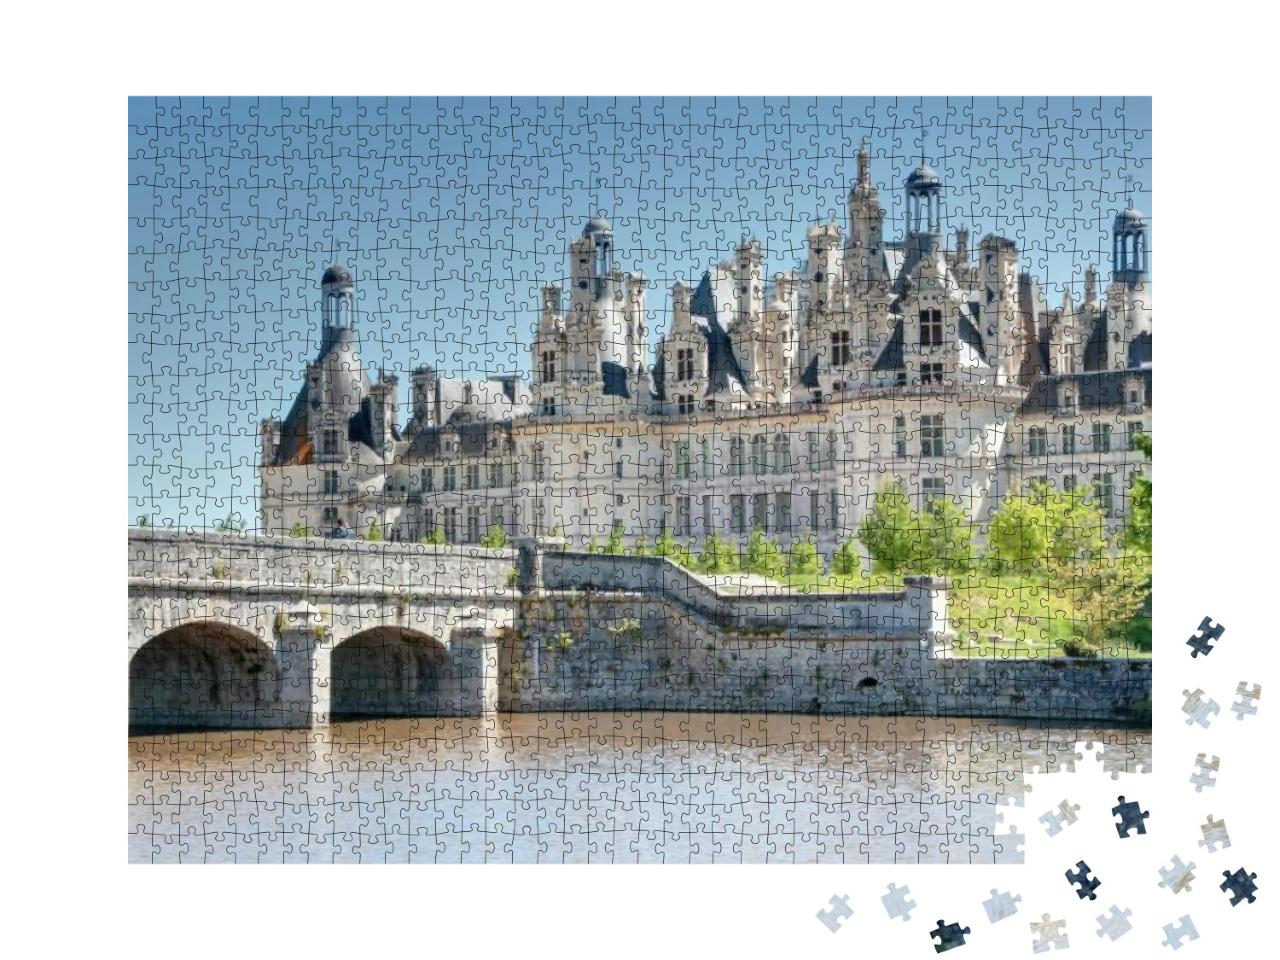 Puzzle 1000 Teile „Das prächtige Château de Chambord in Frankreich“